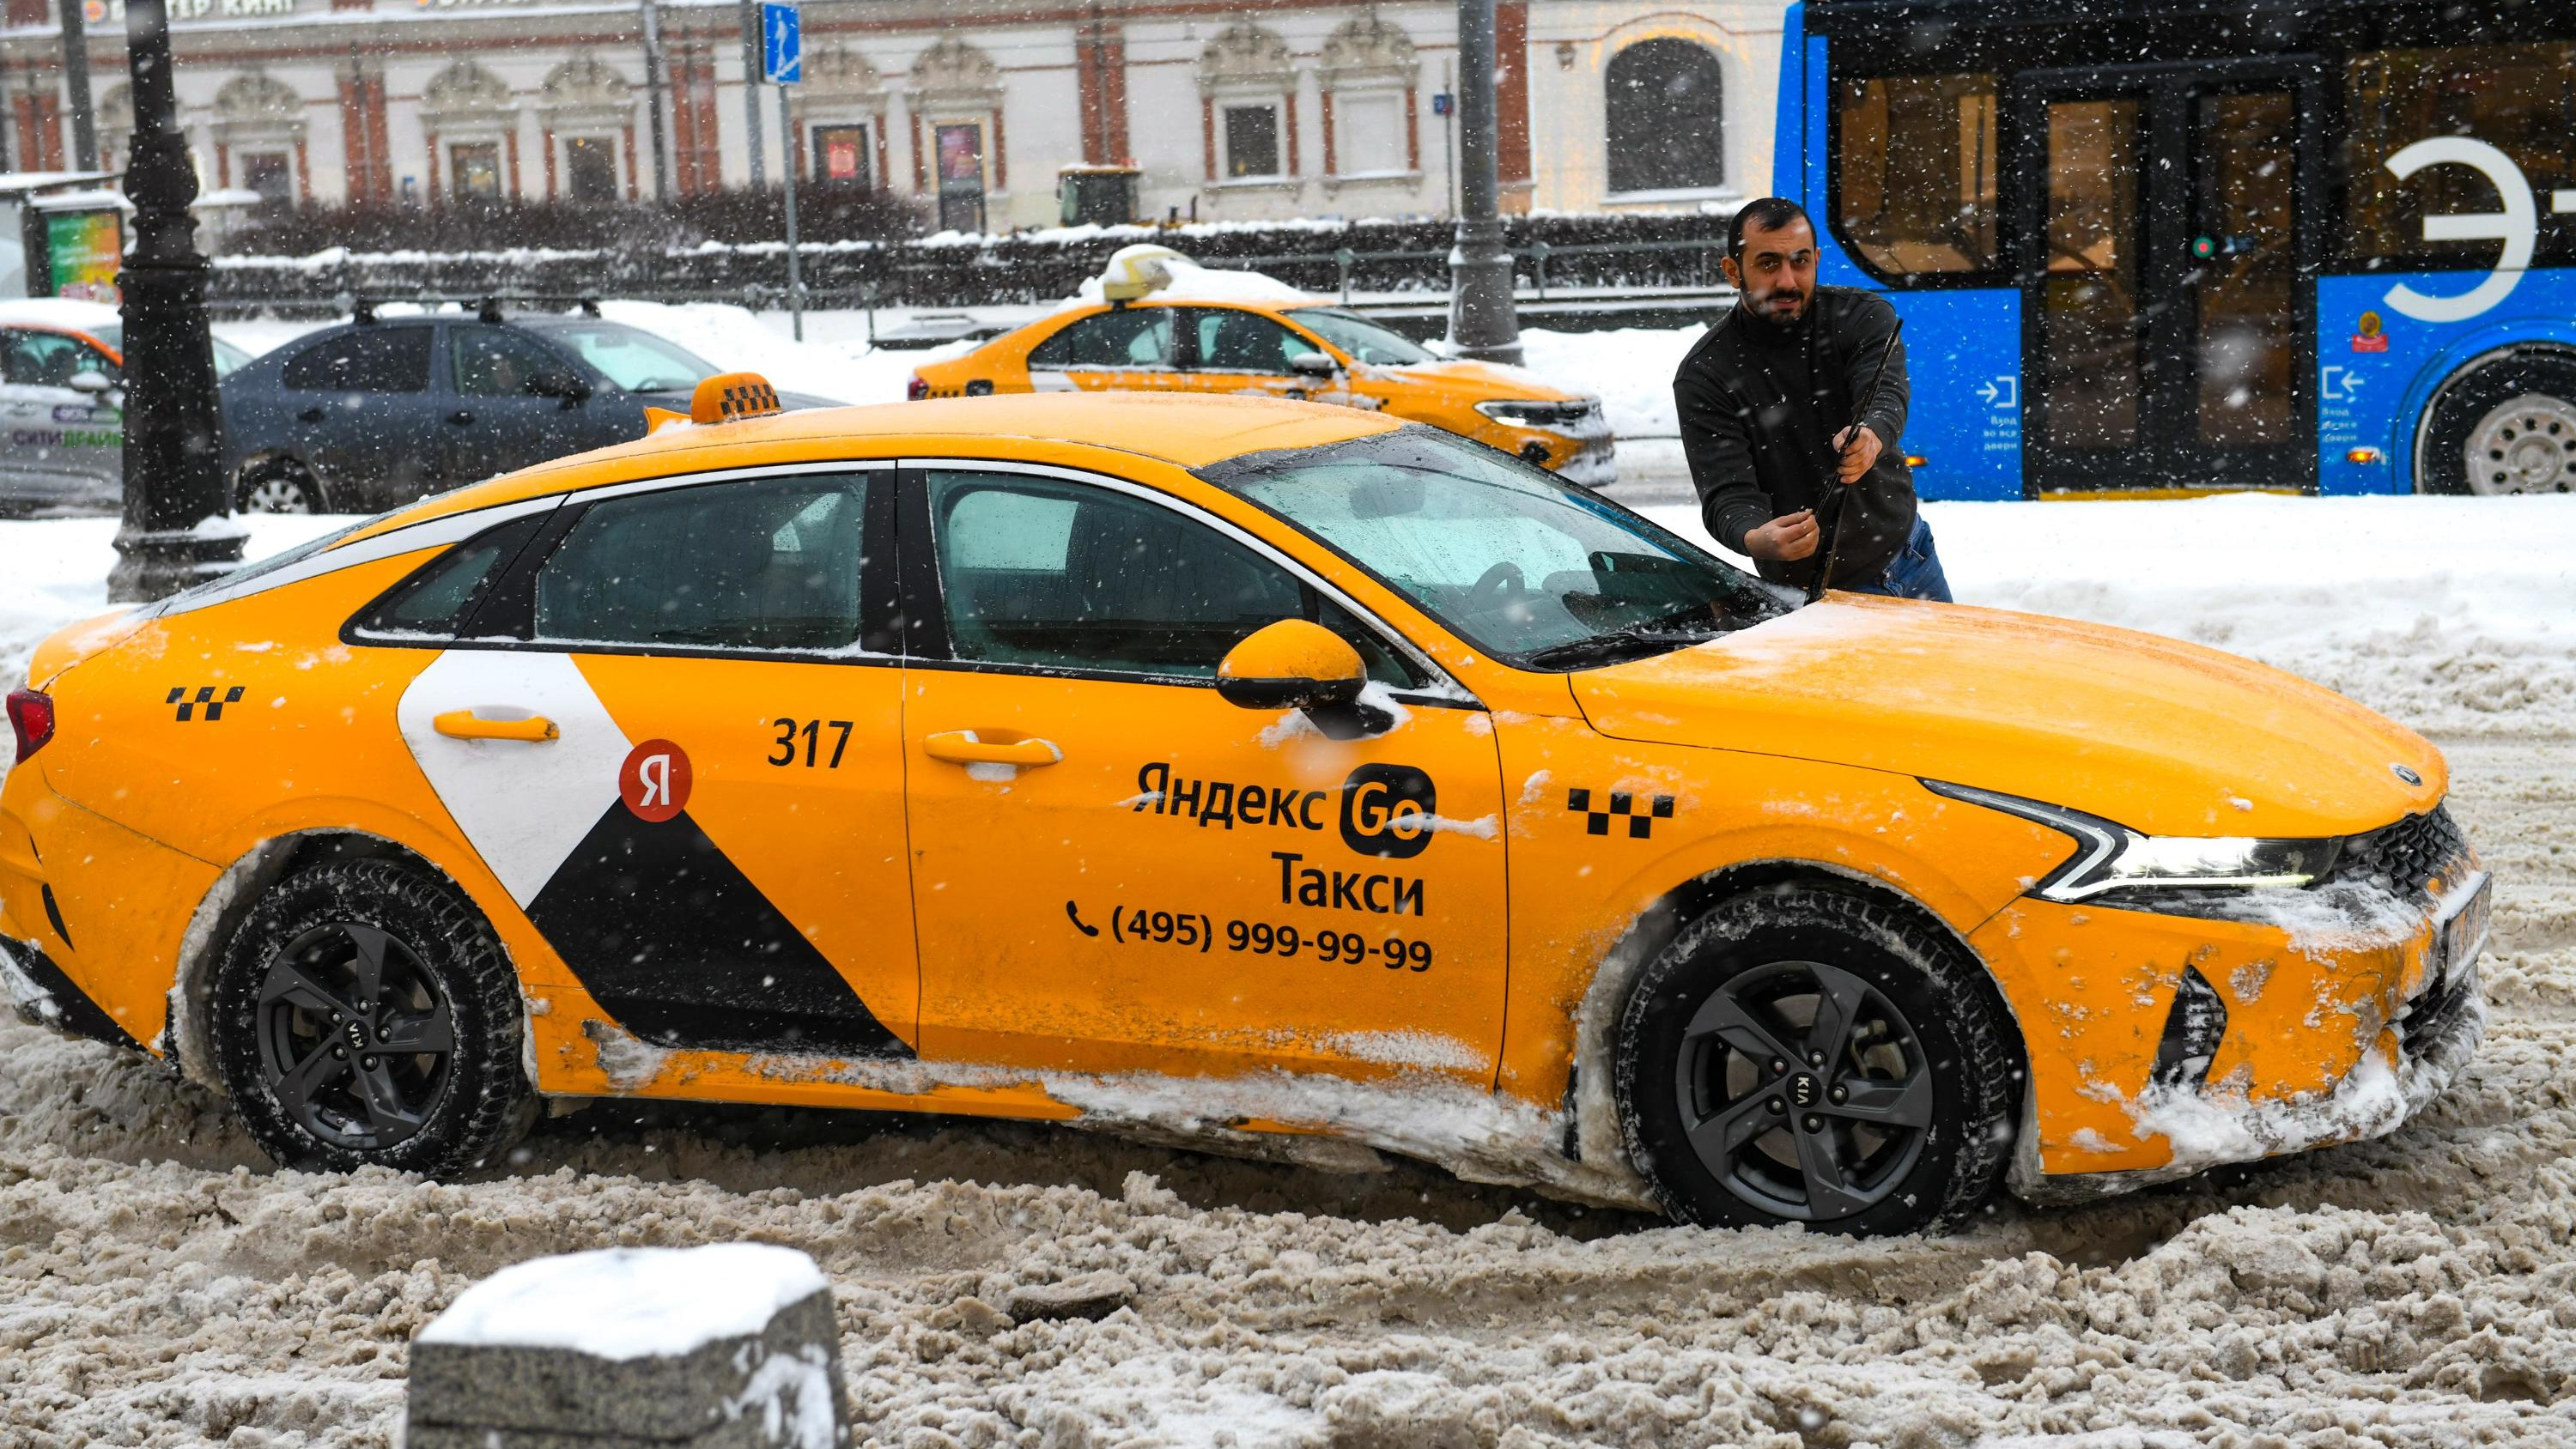 Повышать цены на такси в непогоду думают запретить в Госдуме. В «Максим» объяснили, почему это бессмысленно для Владивостока